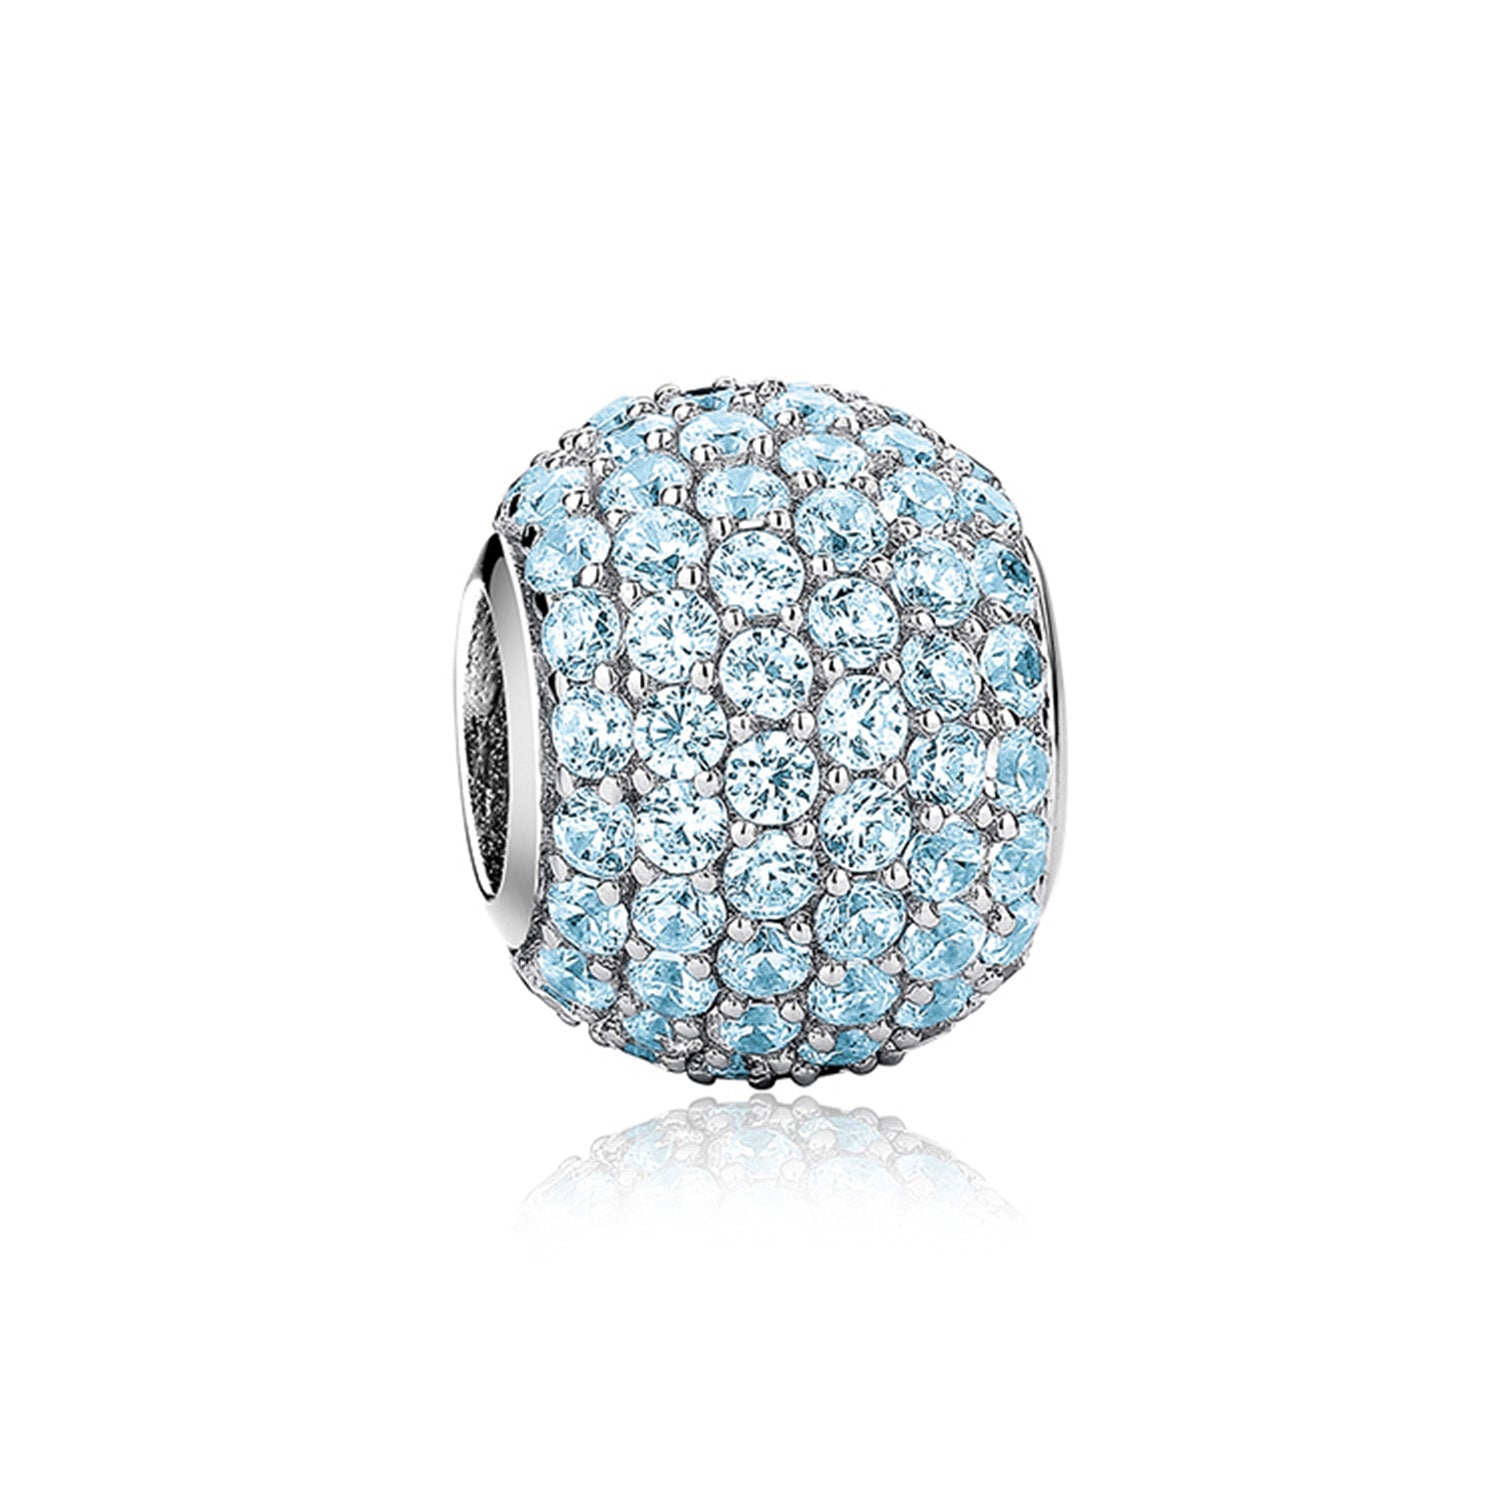 Jewdii Pave Ball Light Blue CZ Stone 925 Sterling Silver Charm fit Bracelet or Necklace